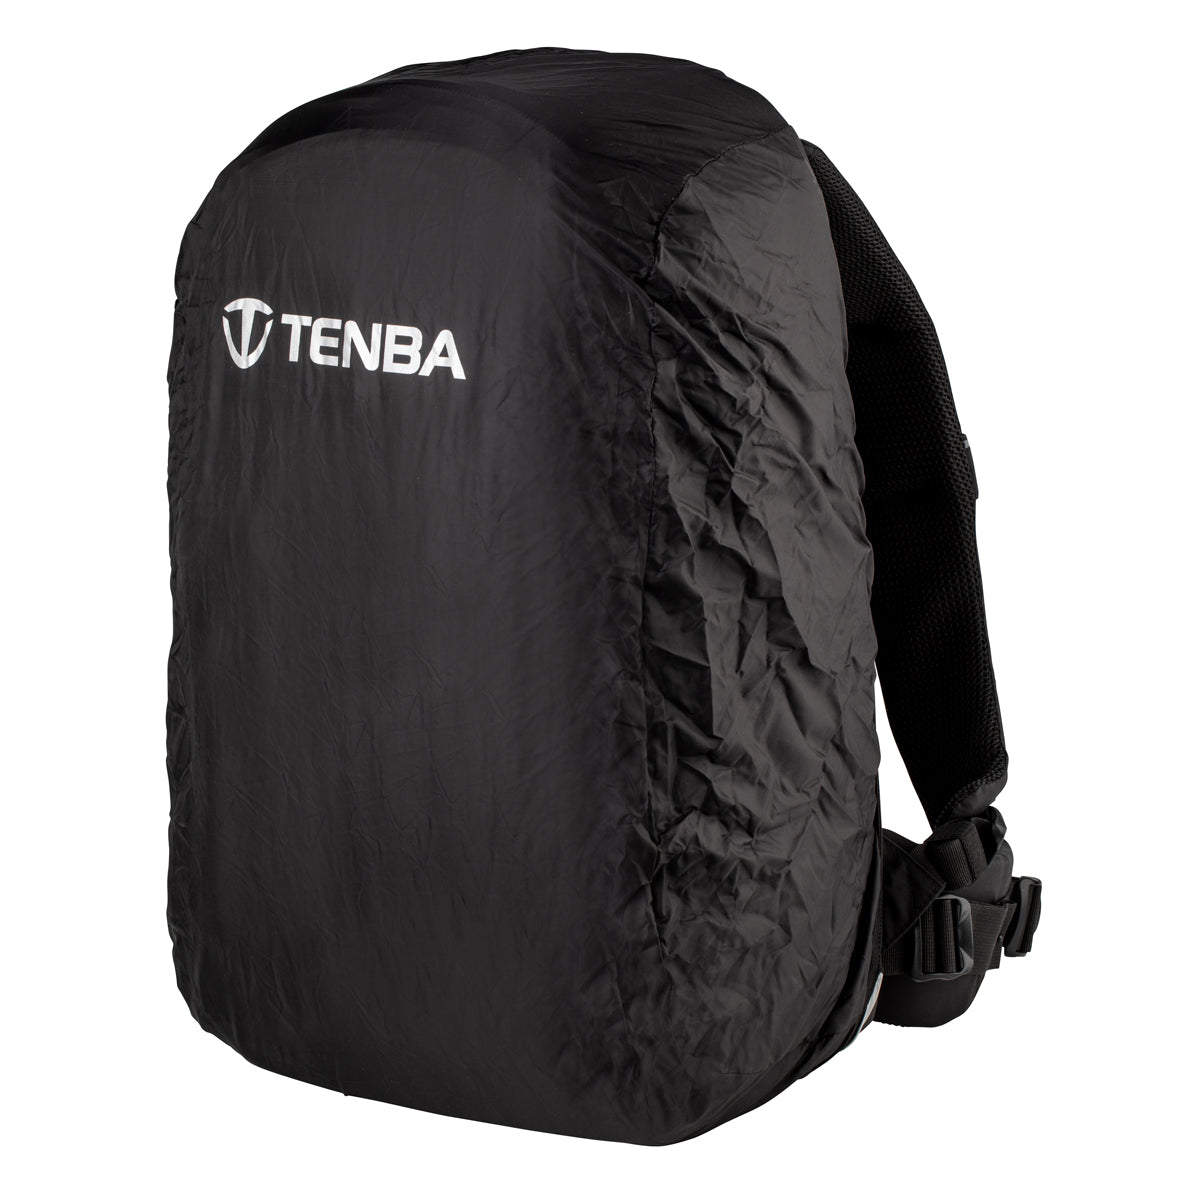 Tenba Shootout 32L Backpack